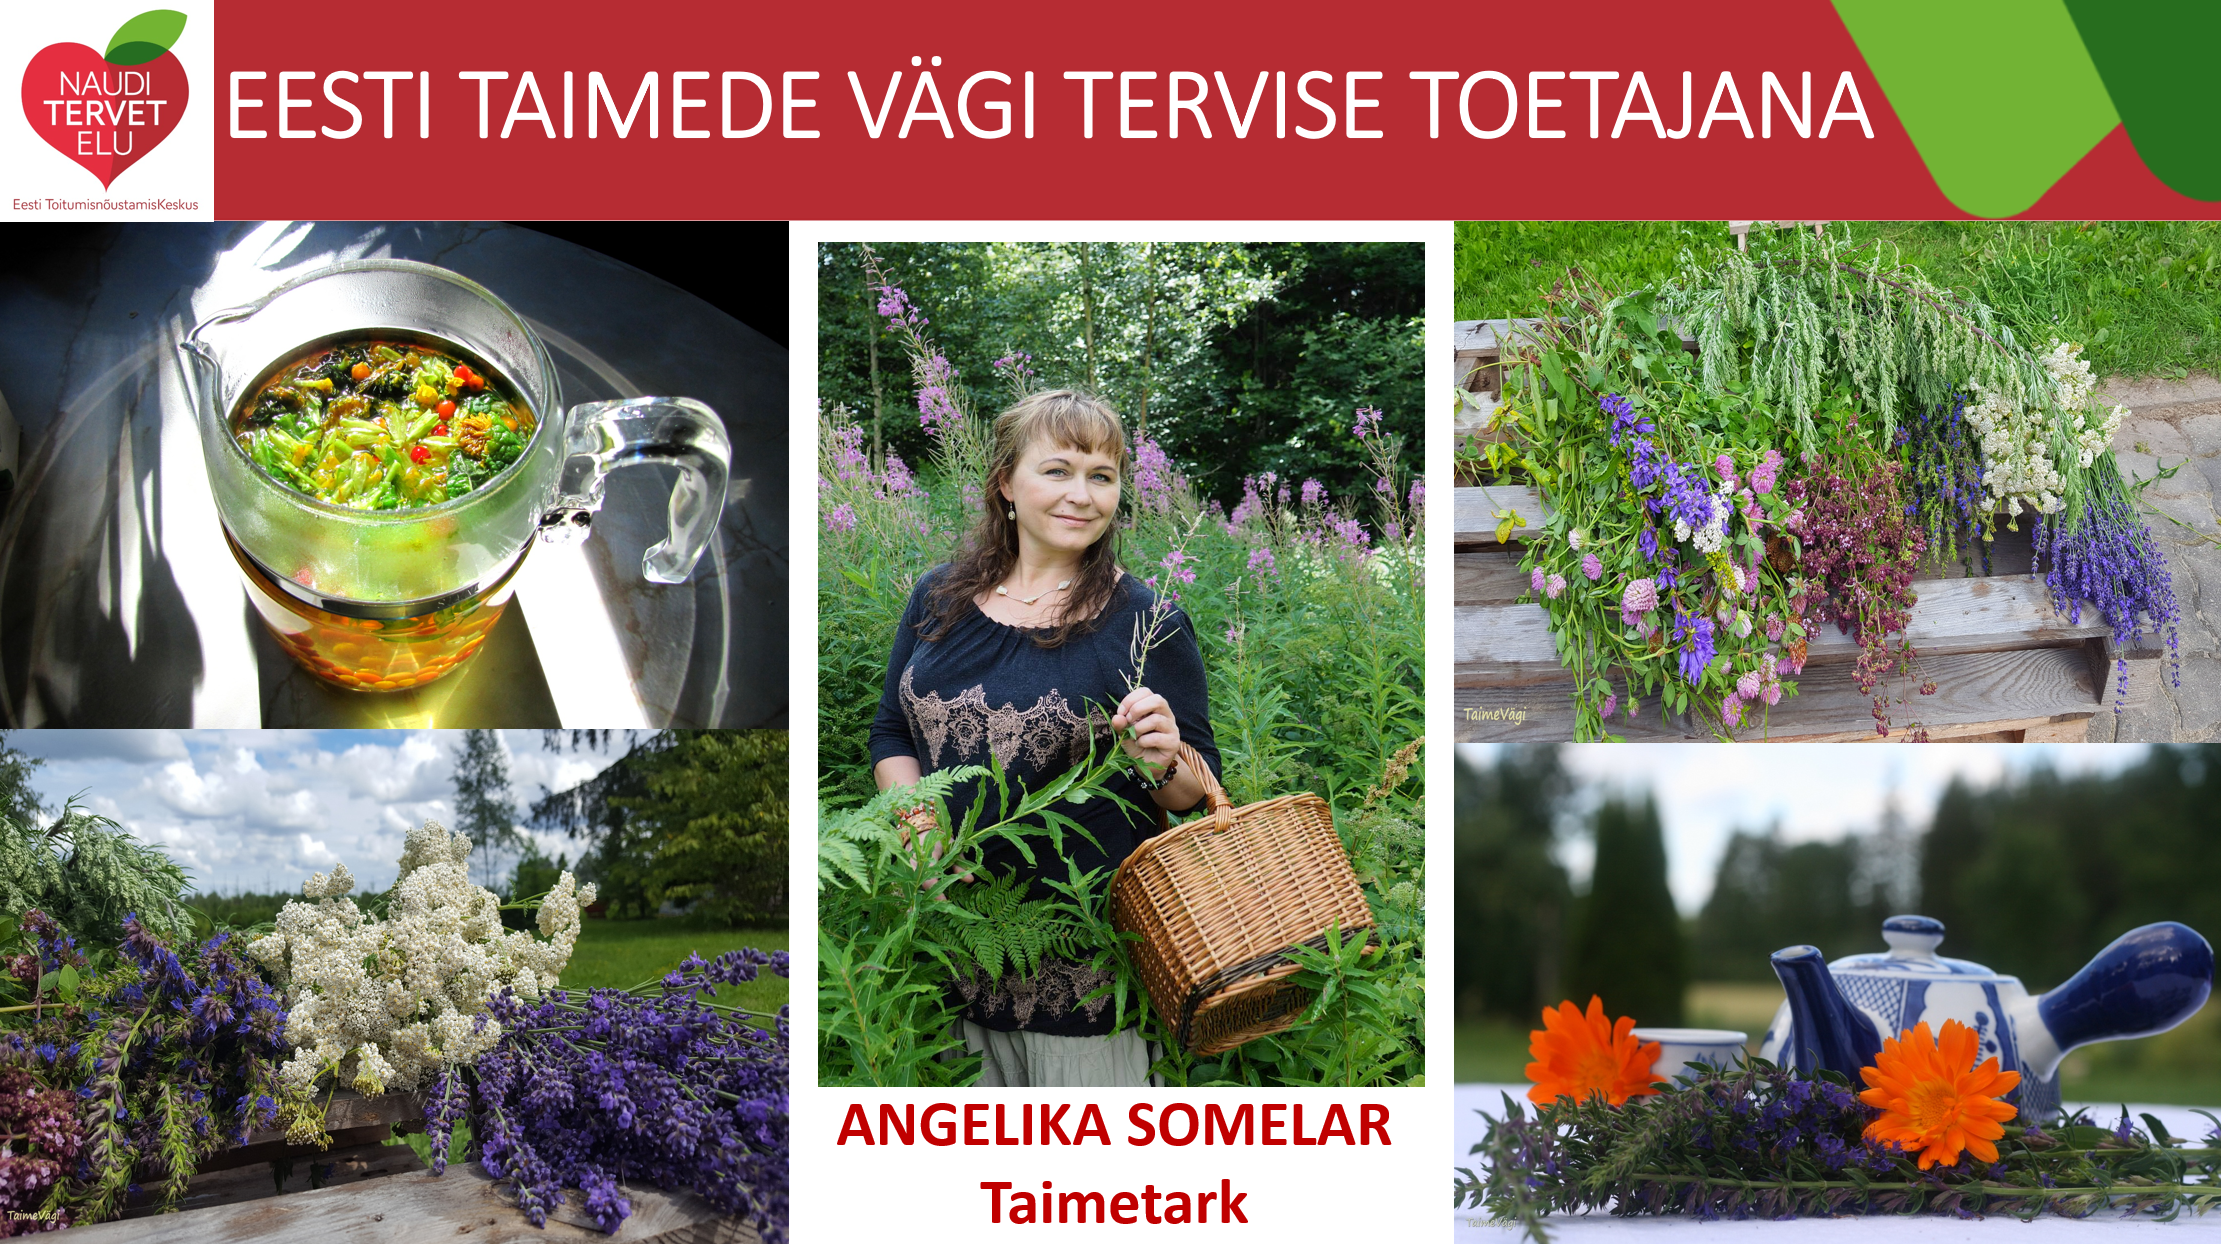 Eesti taimede vägi Angelika Somelar